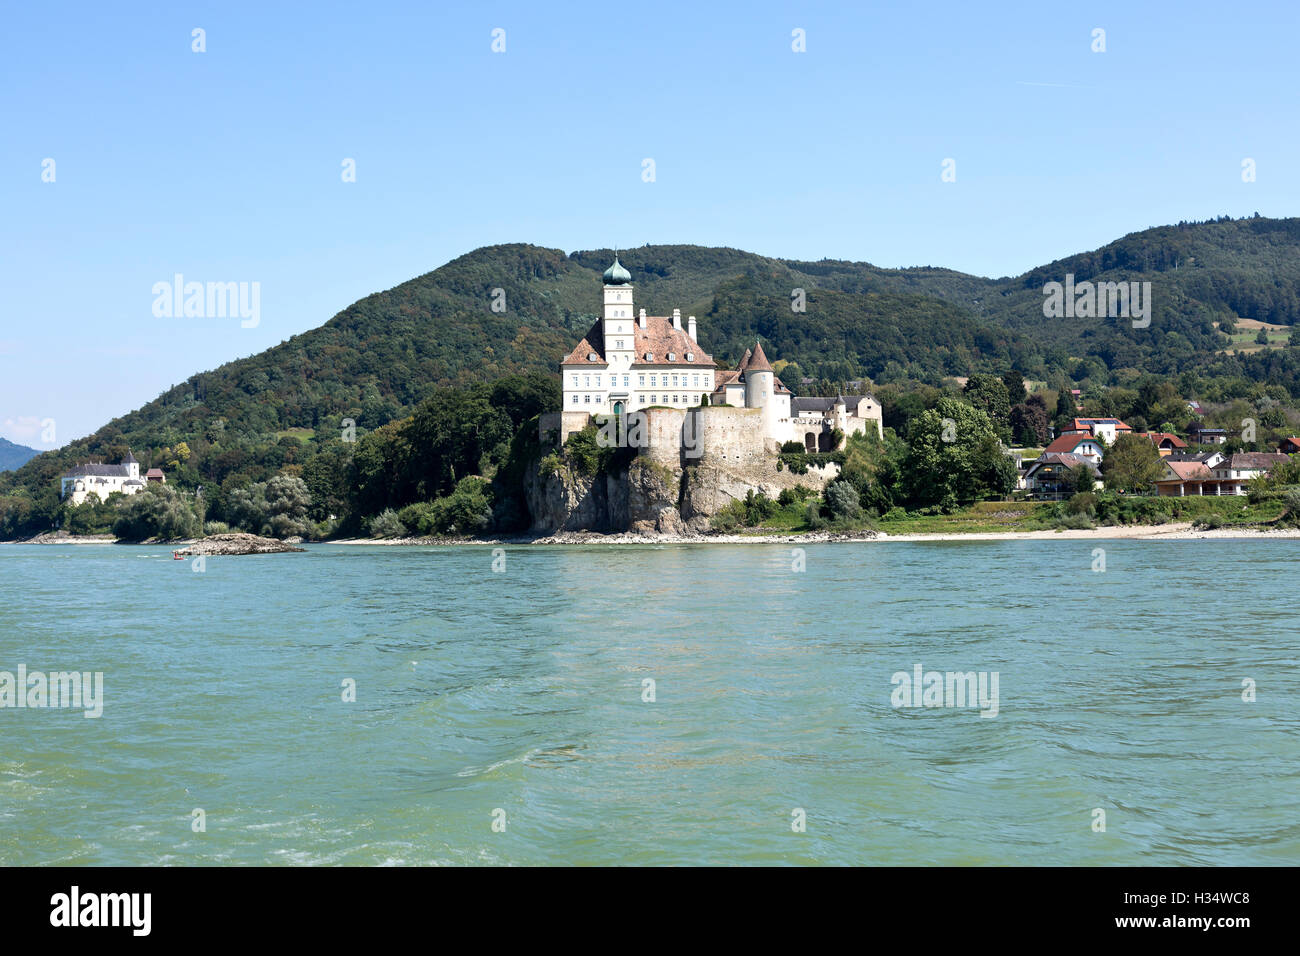 Vista di Schonbuhel castello medievale in piedi sul bordo di una scogliera alta nella valle del Danubio di Wachau vicino a Melk, Austria. Foto Stock